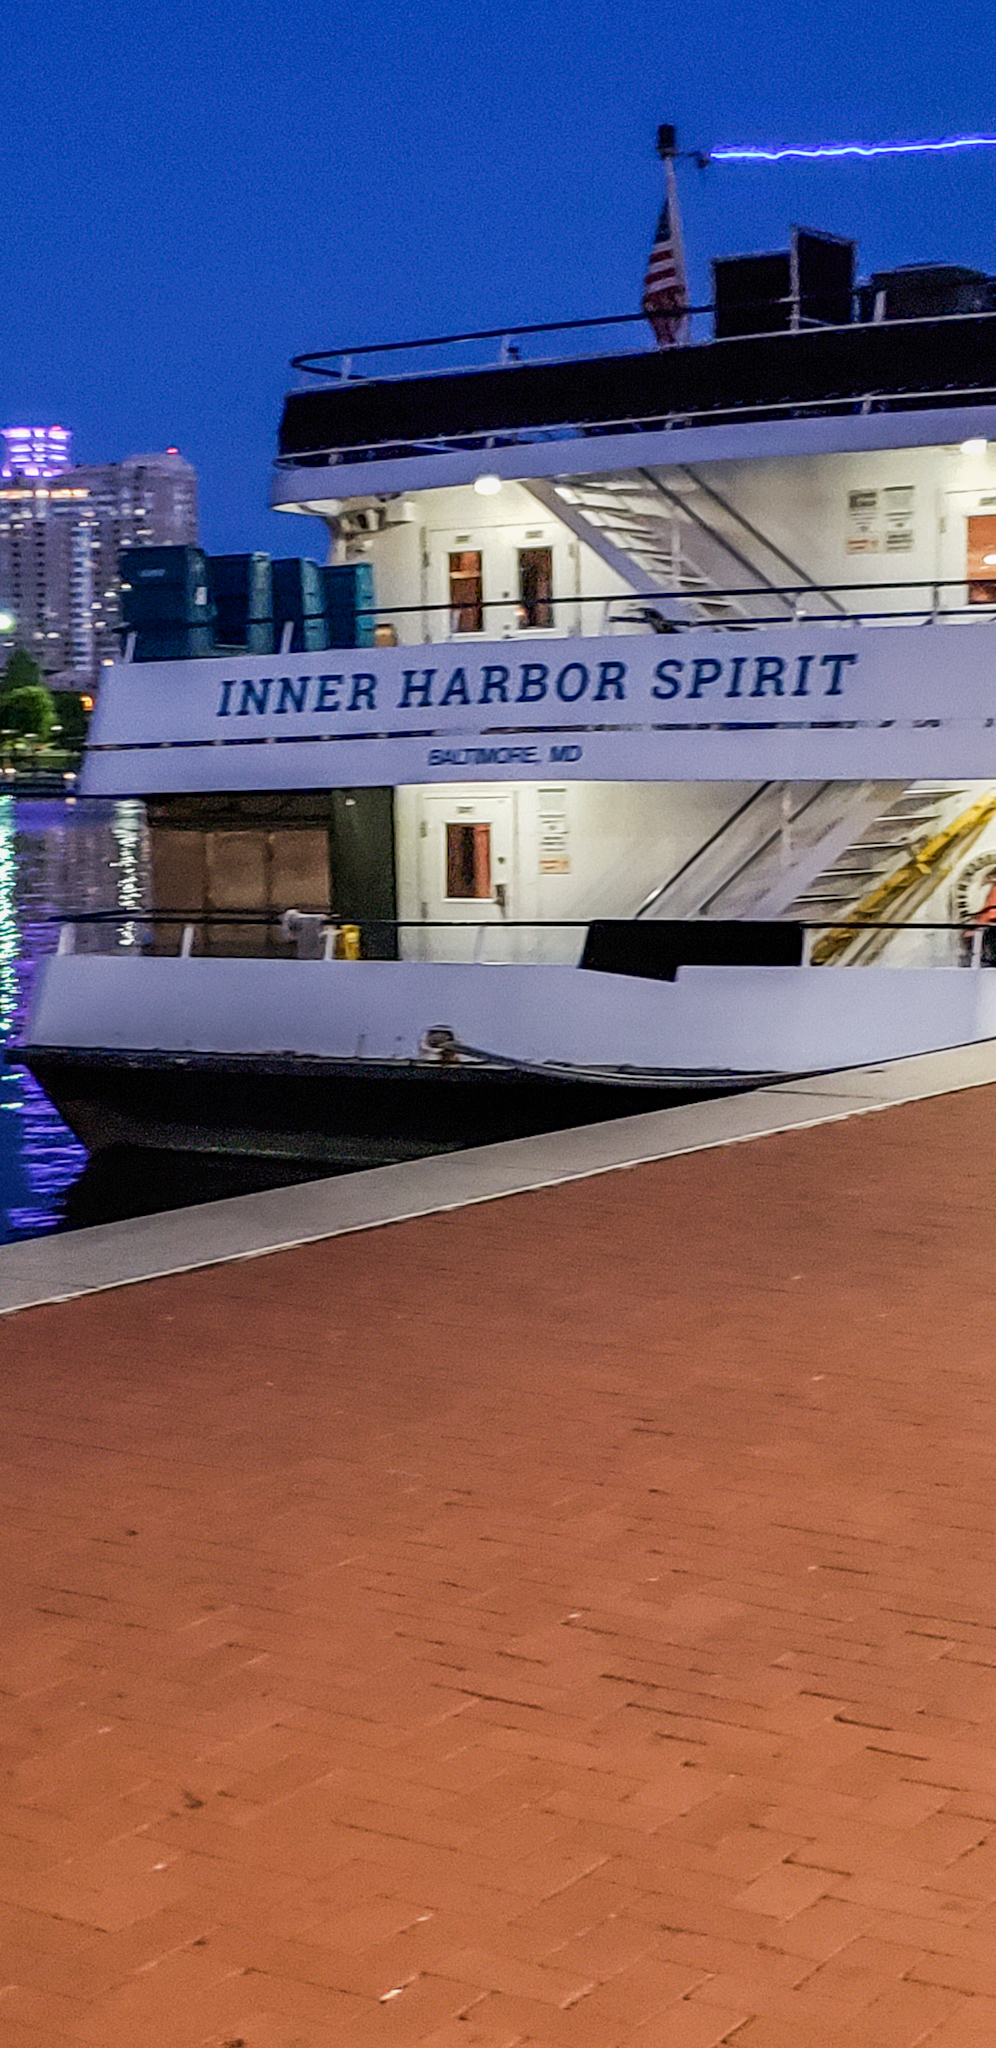 Inner Harbor Cruise